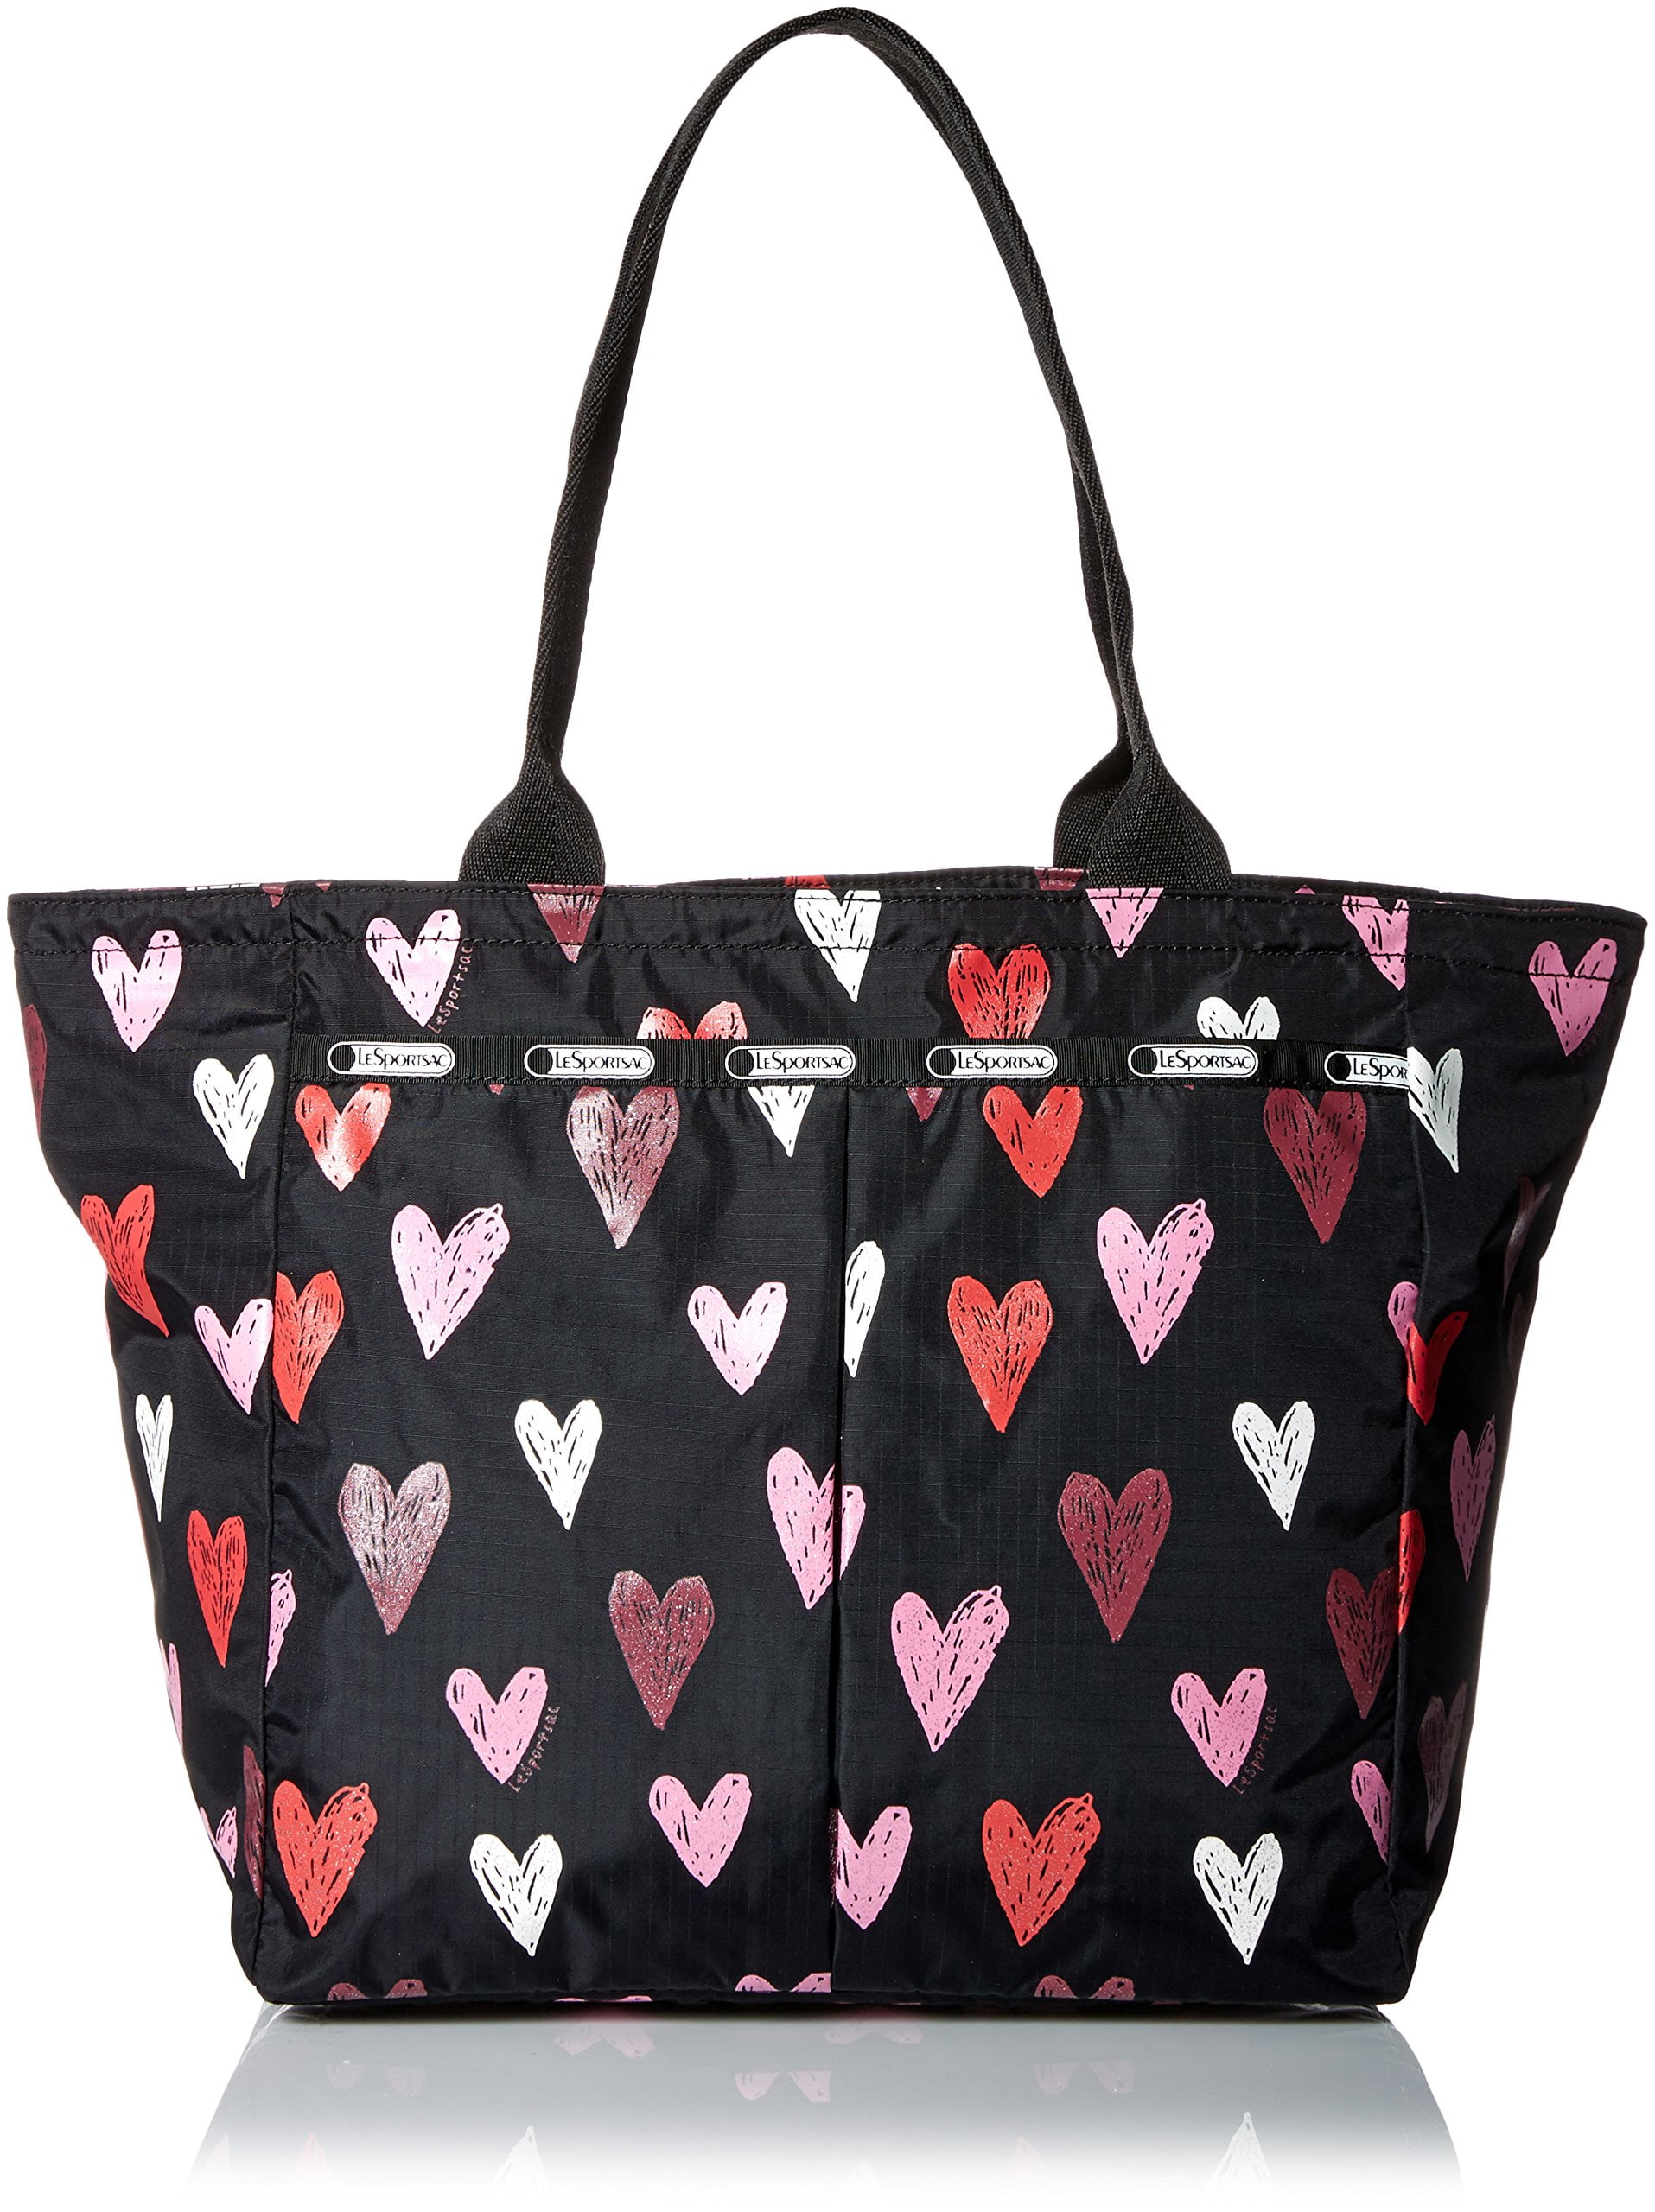 LeSportsac Everygirl Handbag Tote Bag (Passion Hearts) 